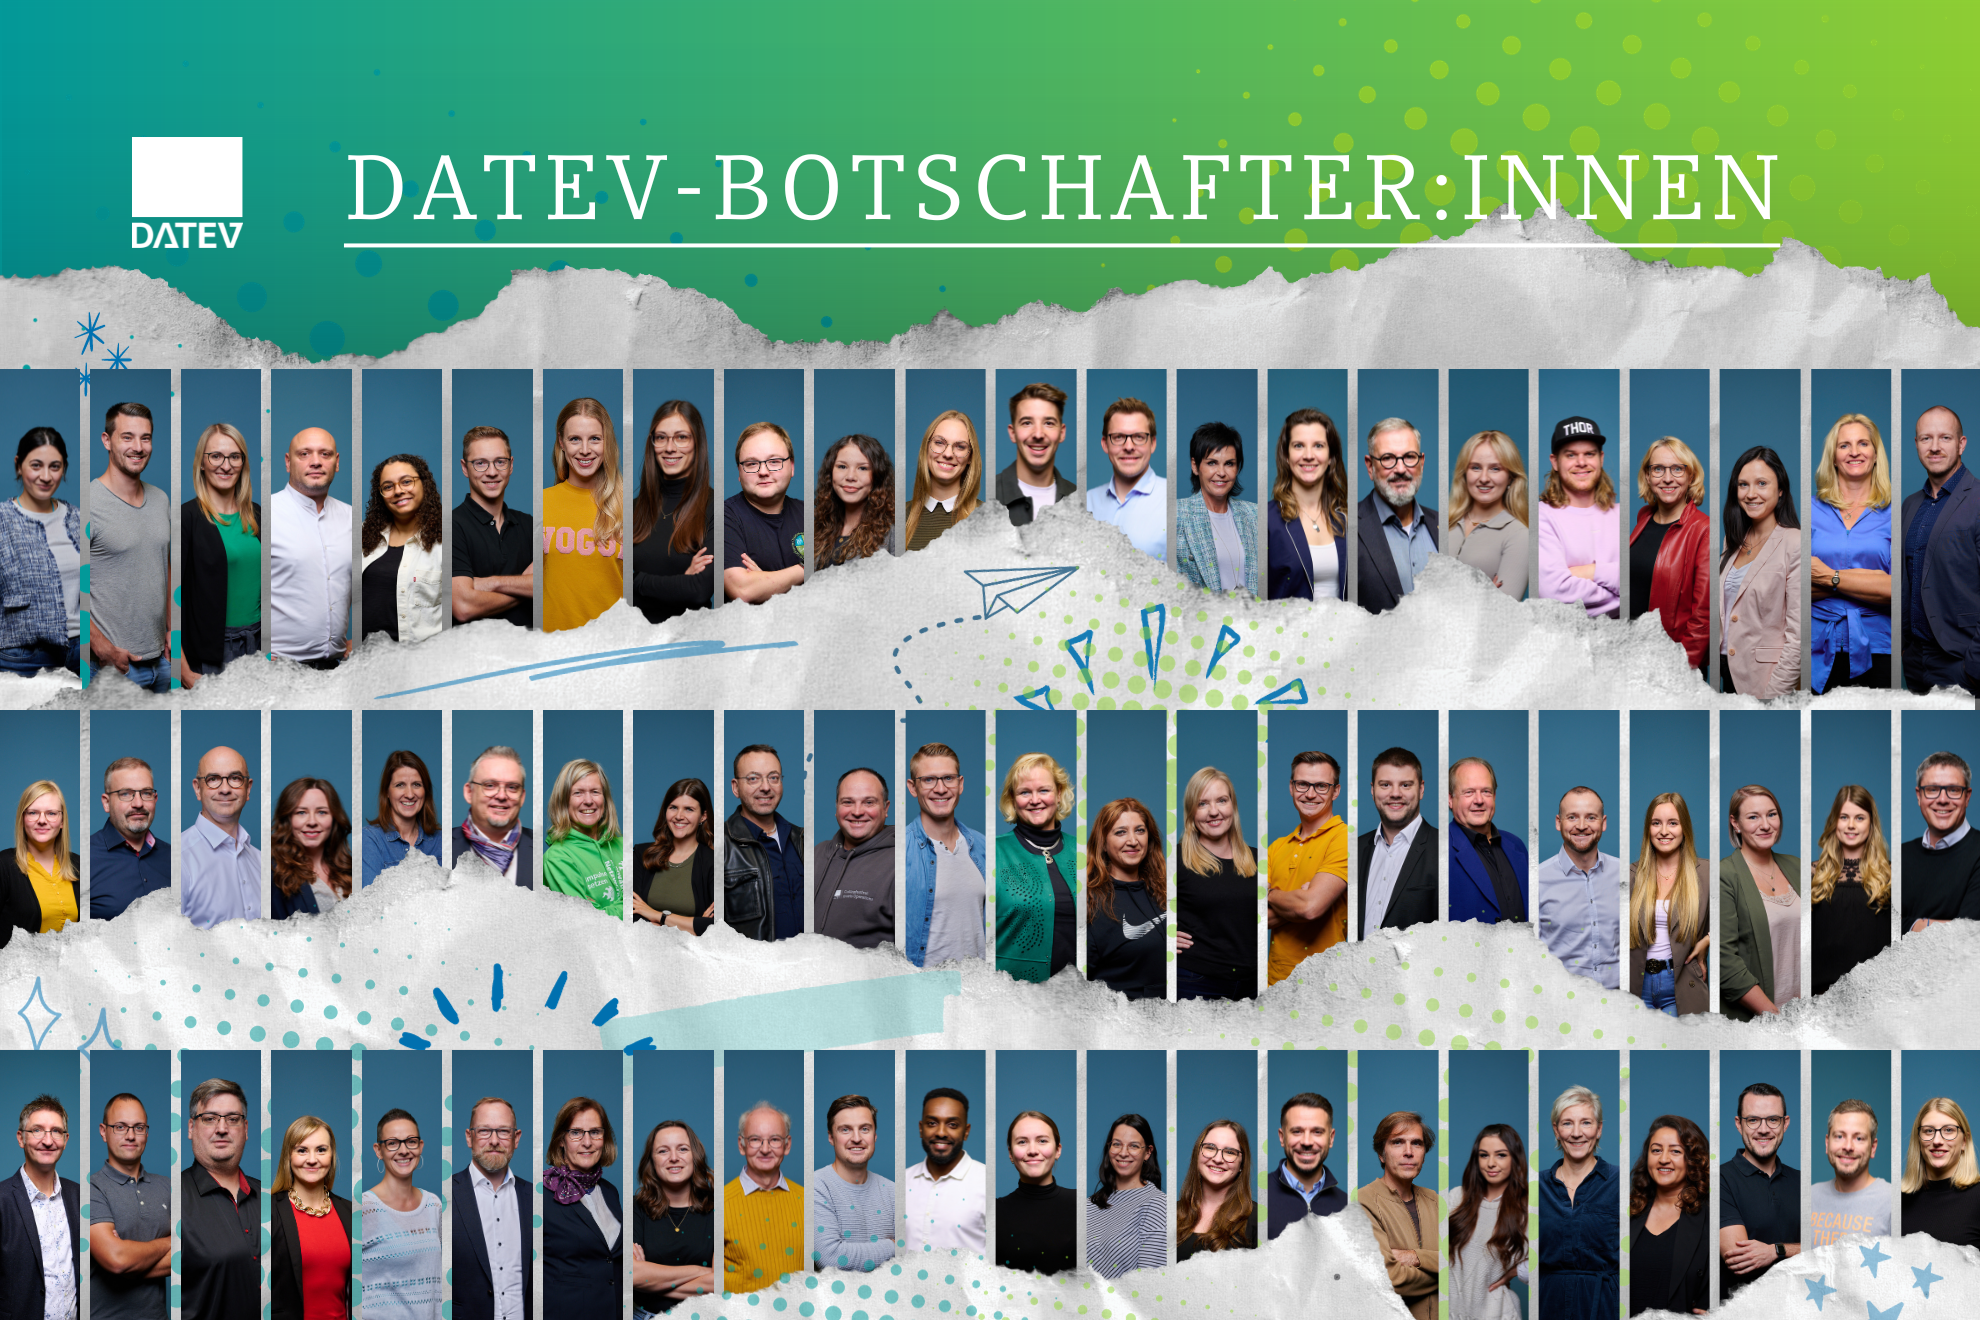 Schmuckbild zeigt viele der DATEV-Botschafterinnen und DATEV-Botschafter.